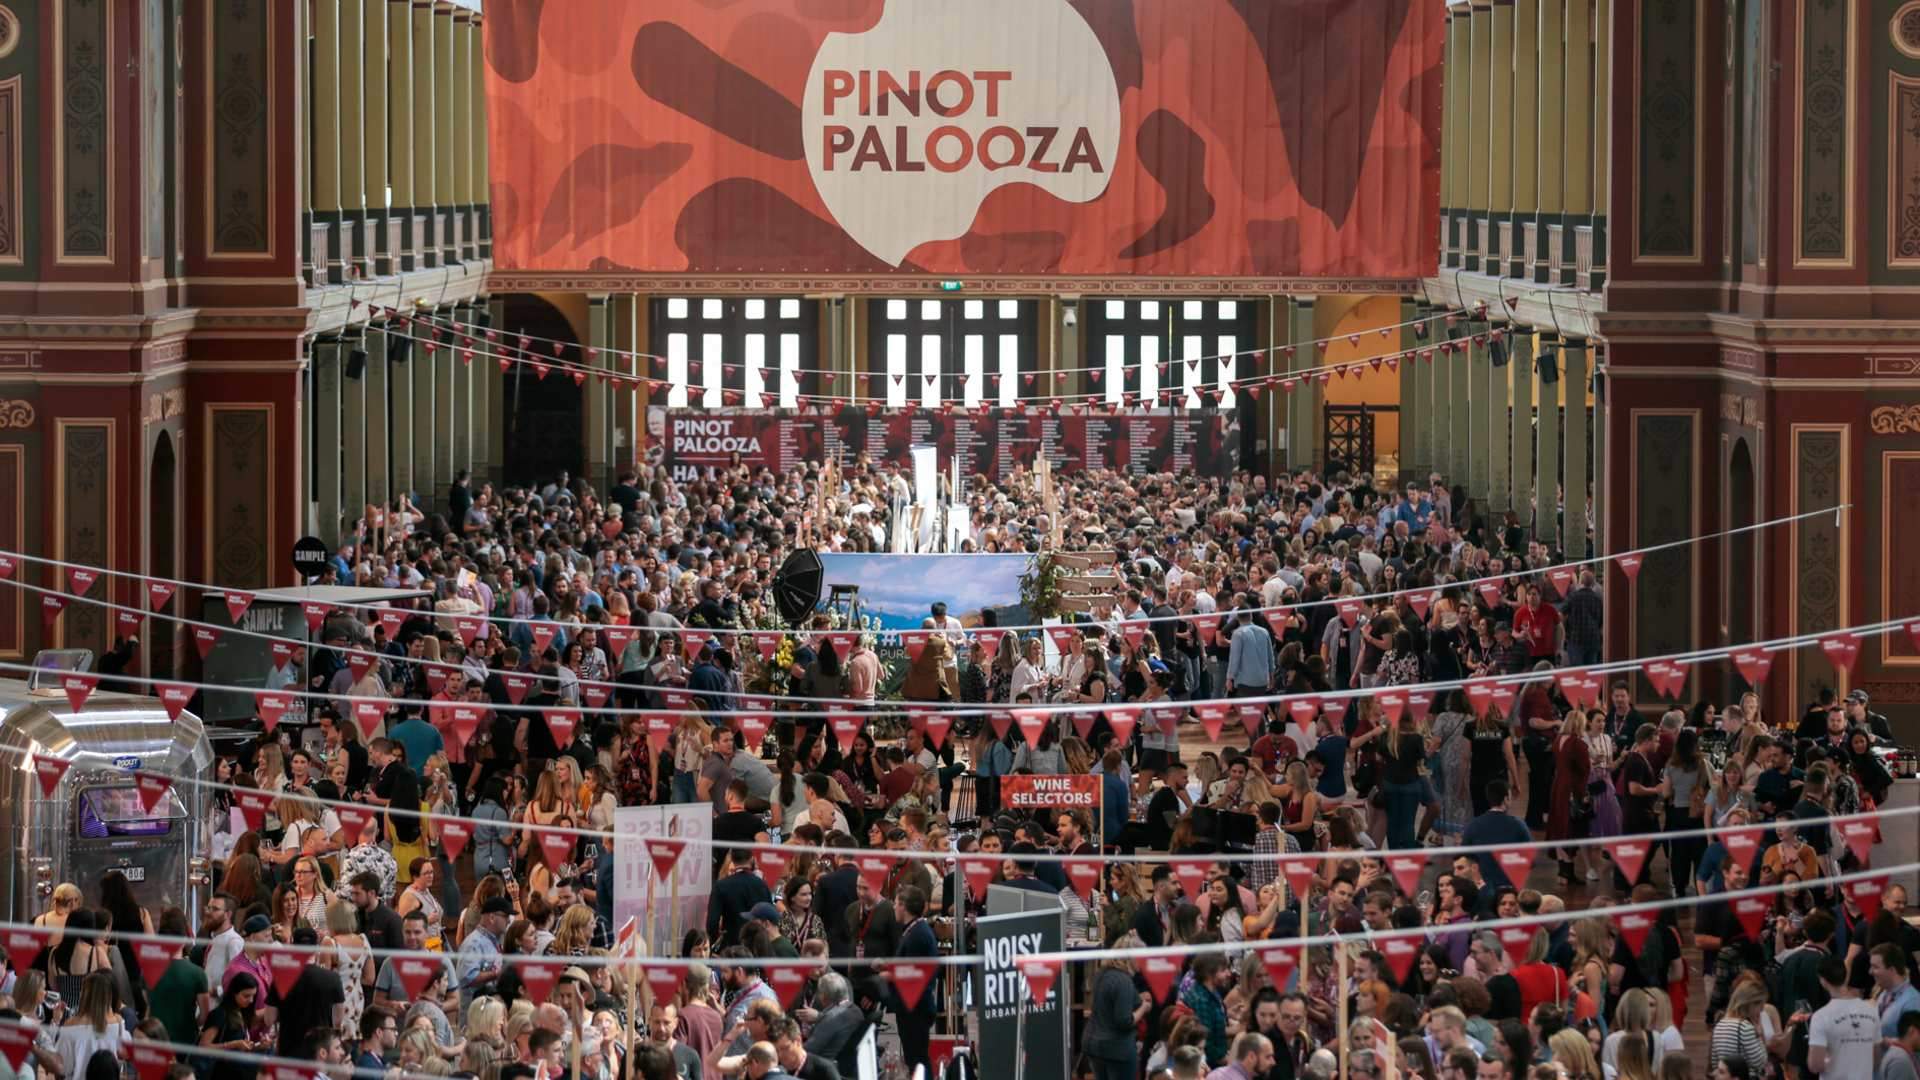 葡萄酒节——皮诺派对